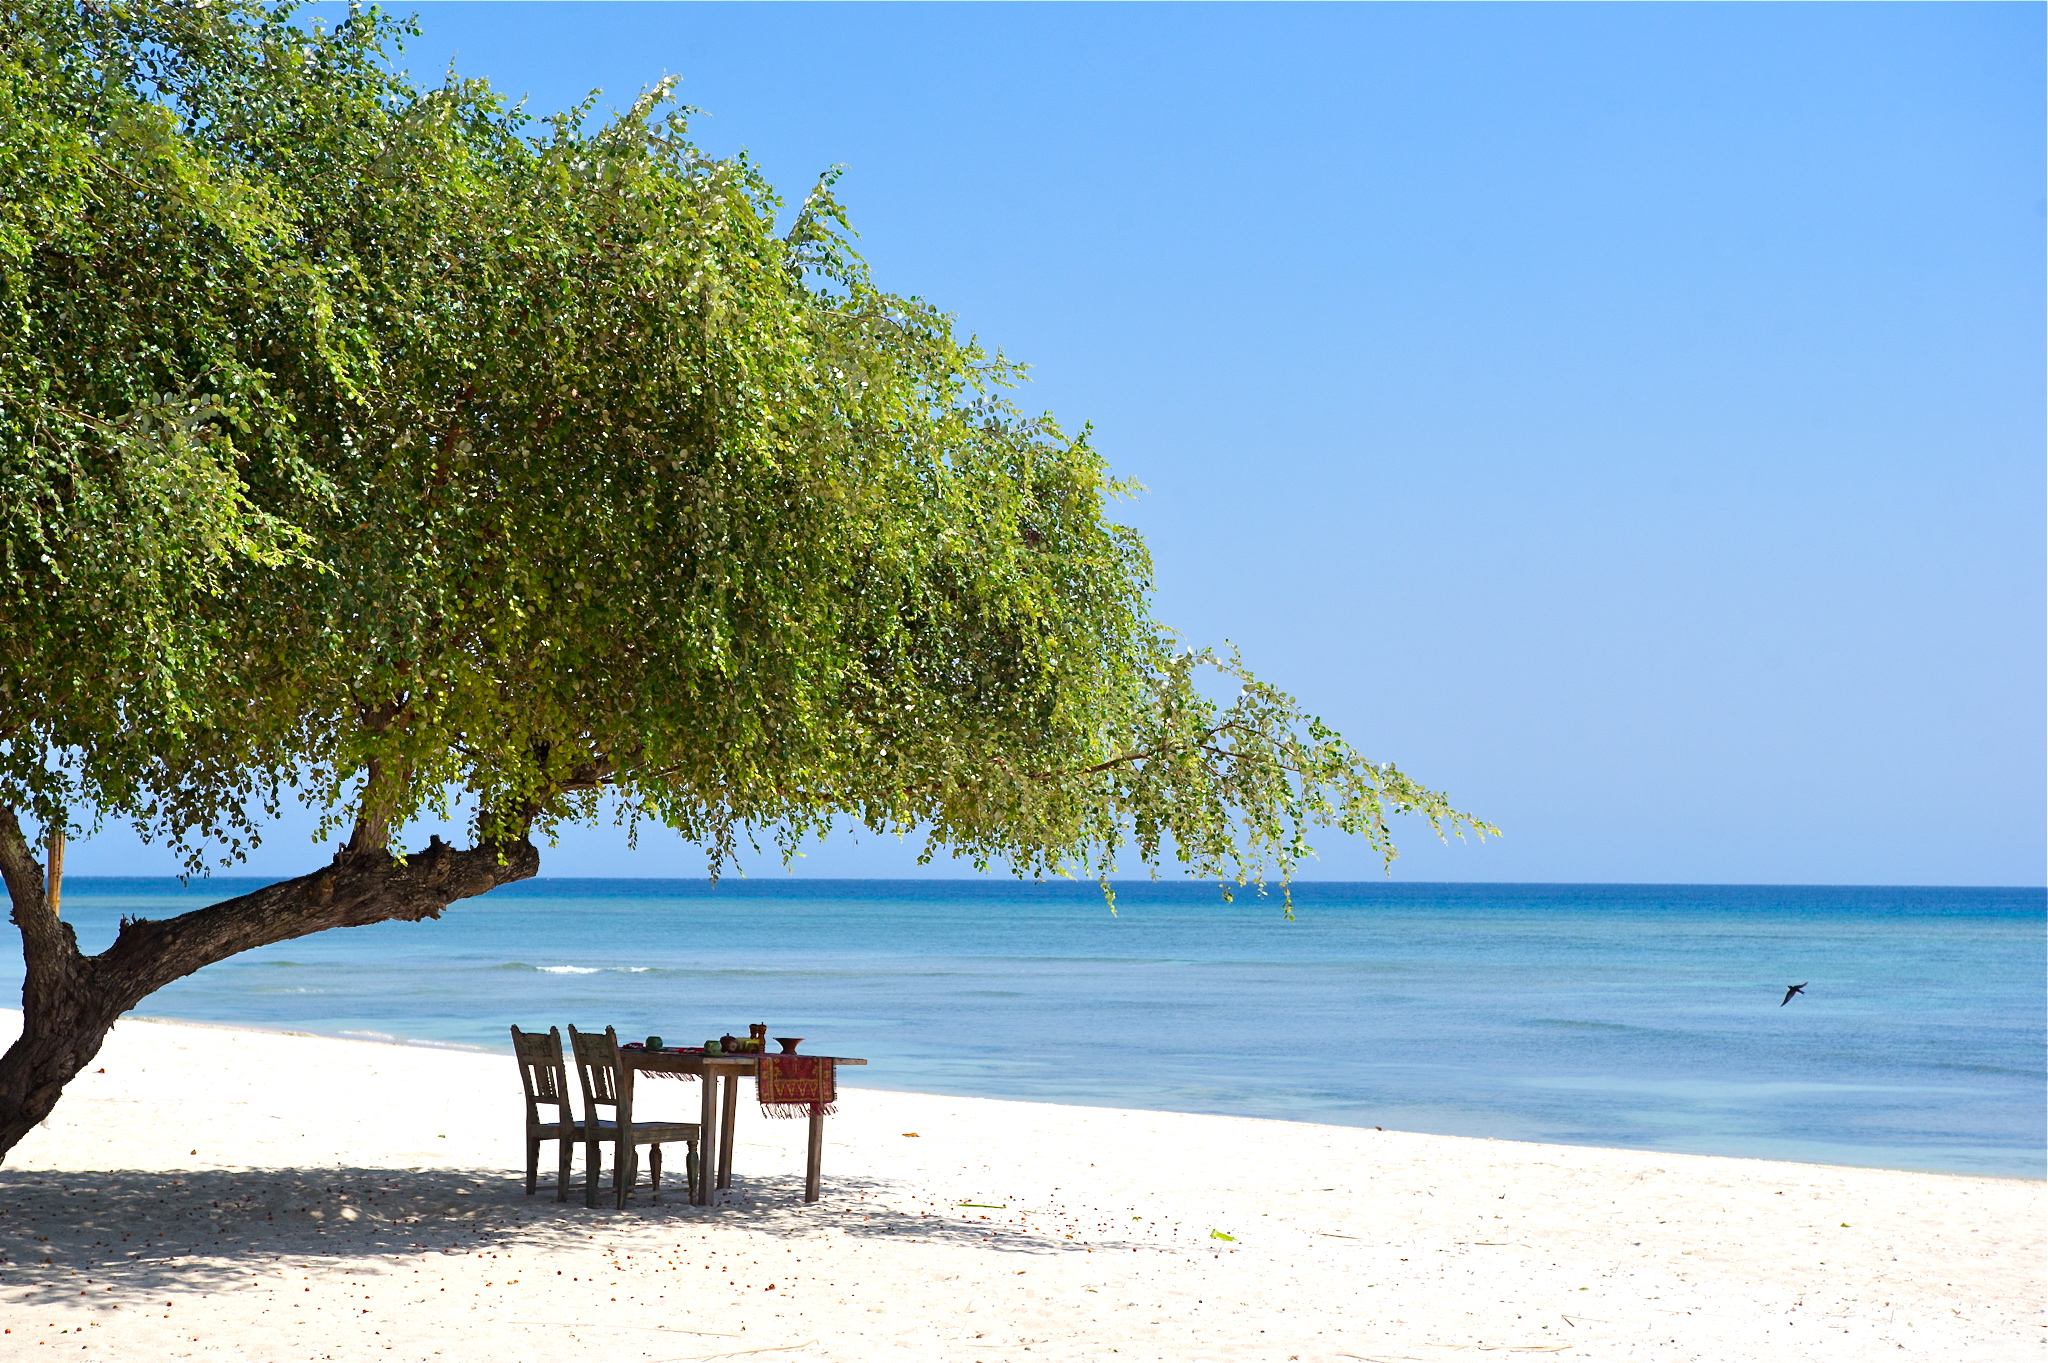 Fotografie cu Pantai Sire - locul popular printre cunoscătorii de relaxare